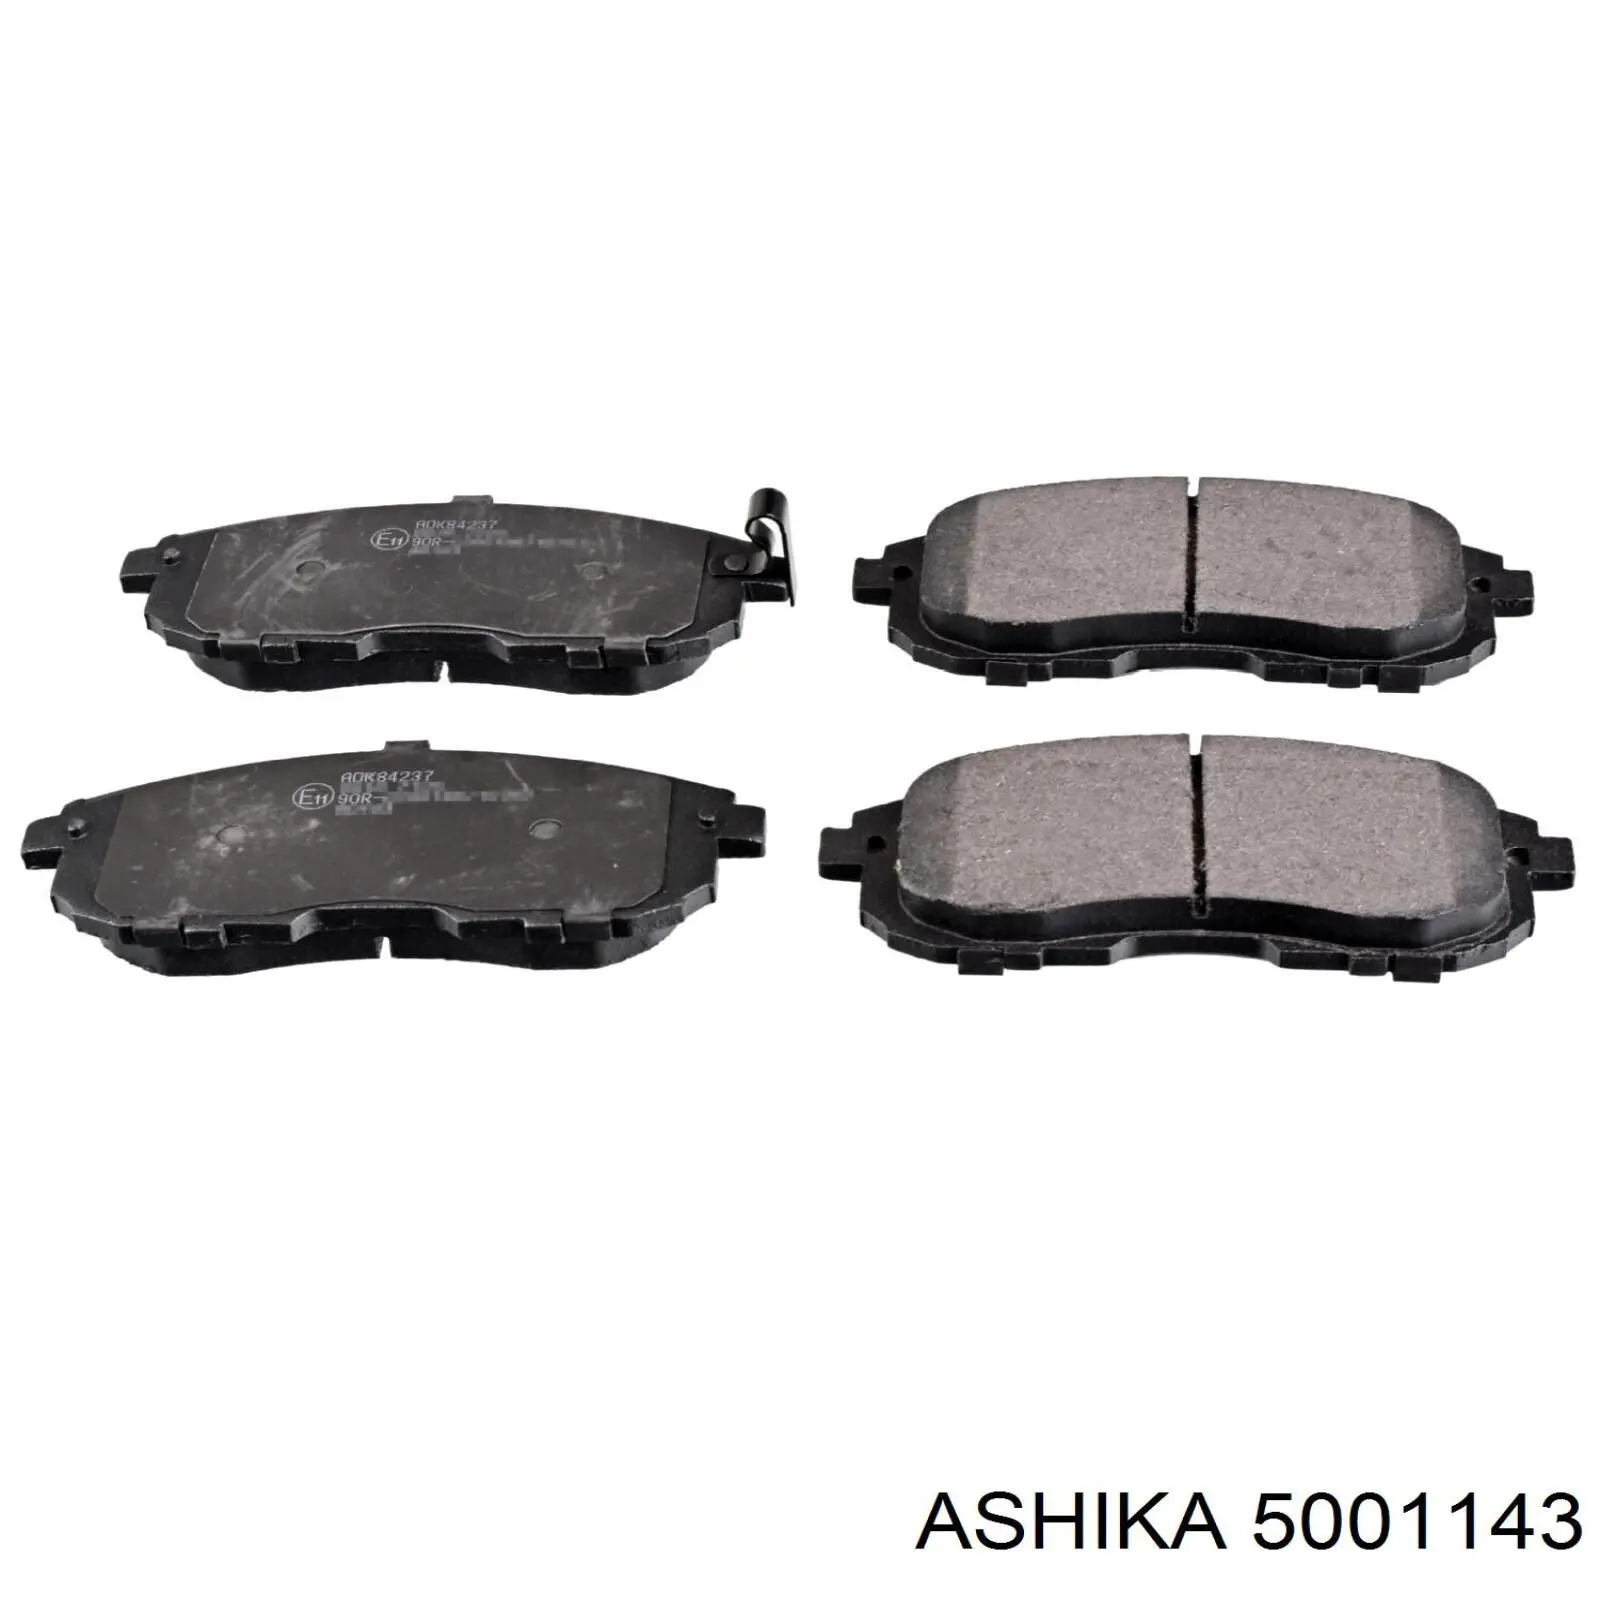 5001143 Ashika pastillas de freno delanteras